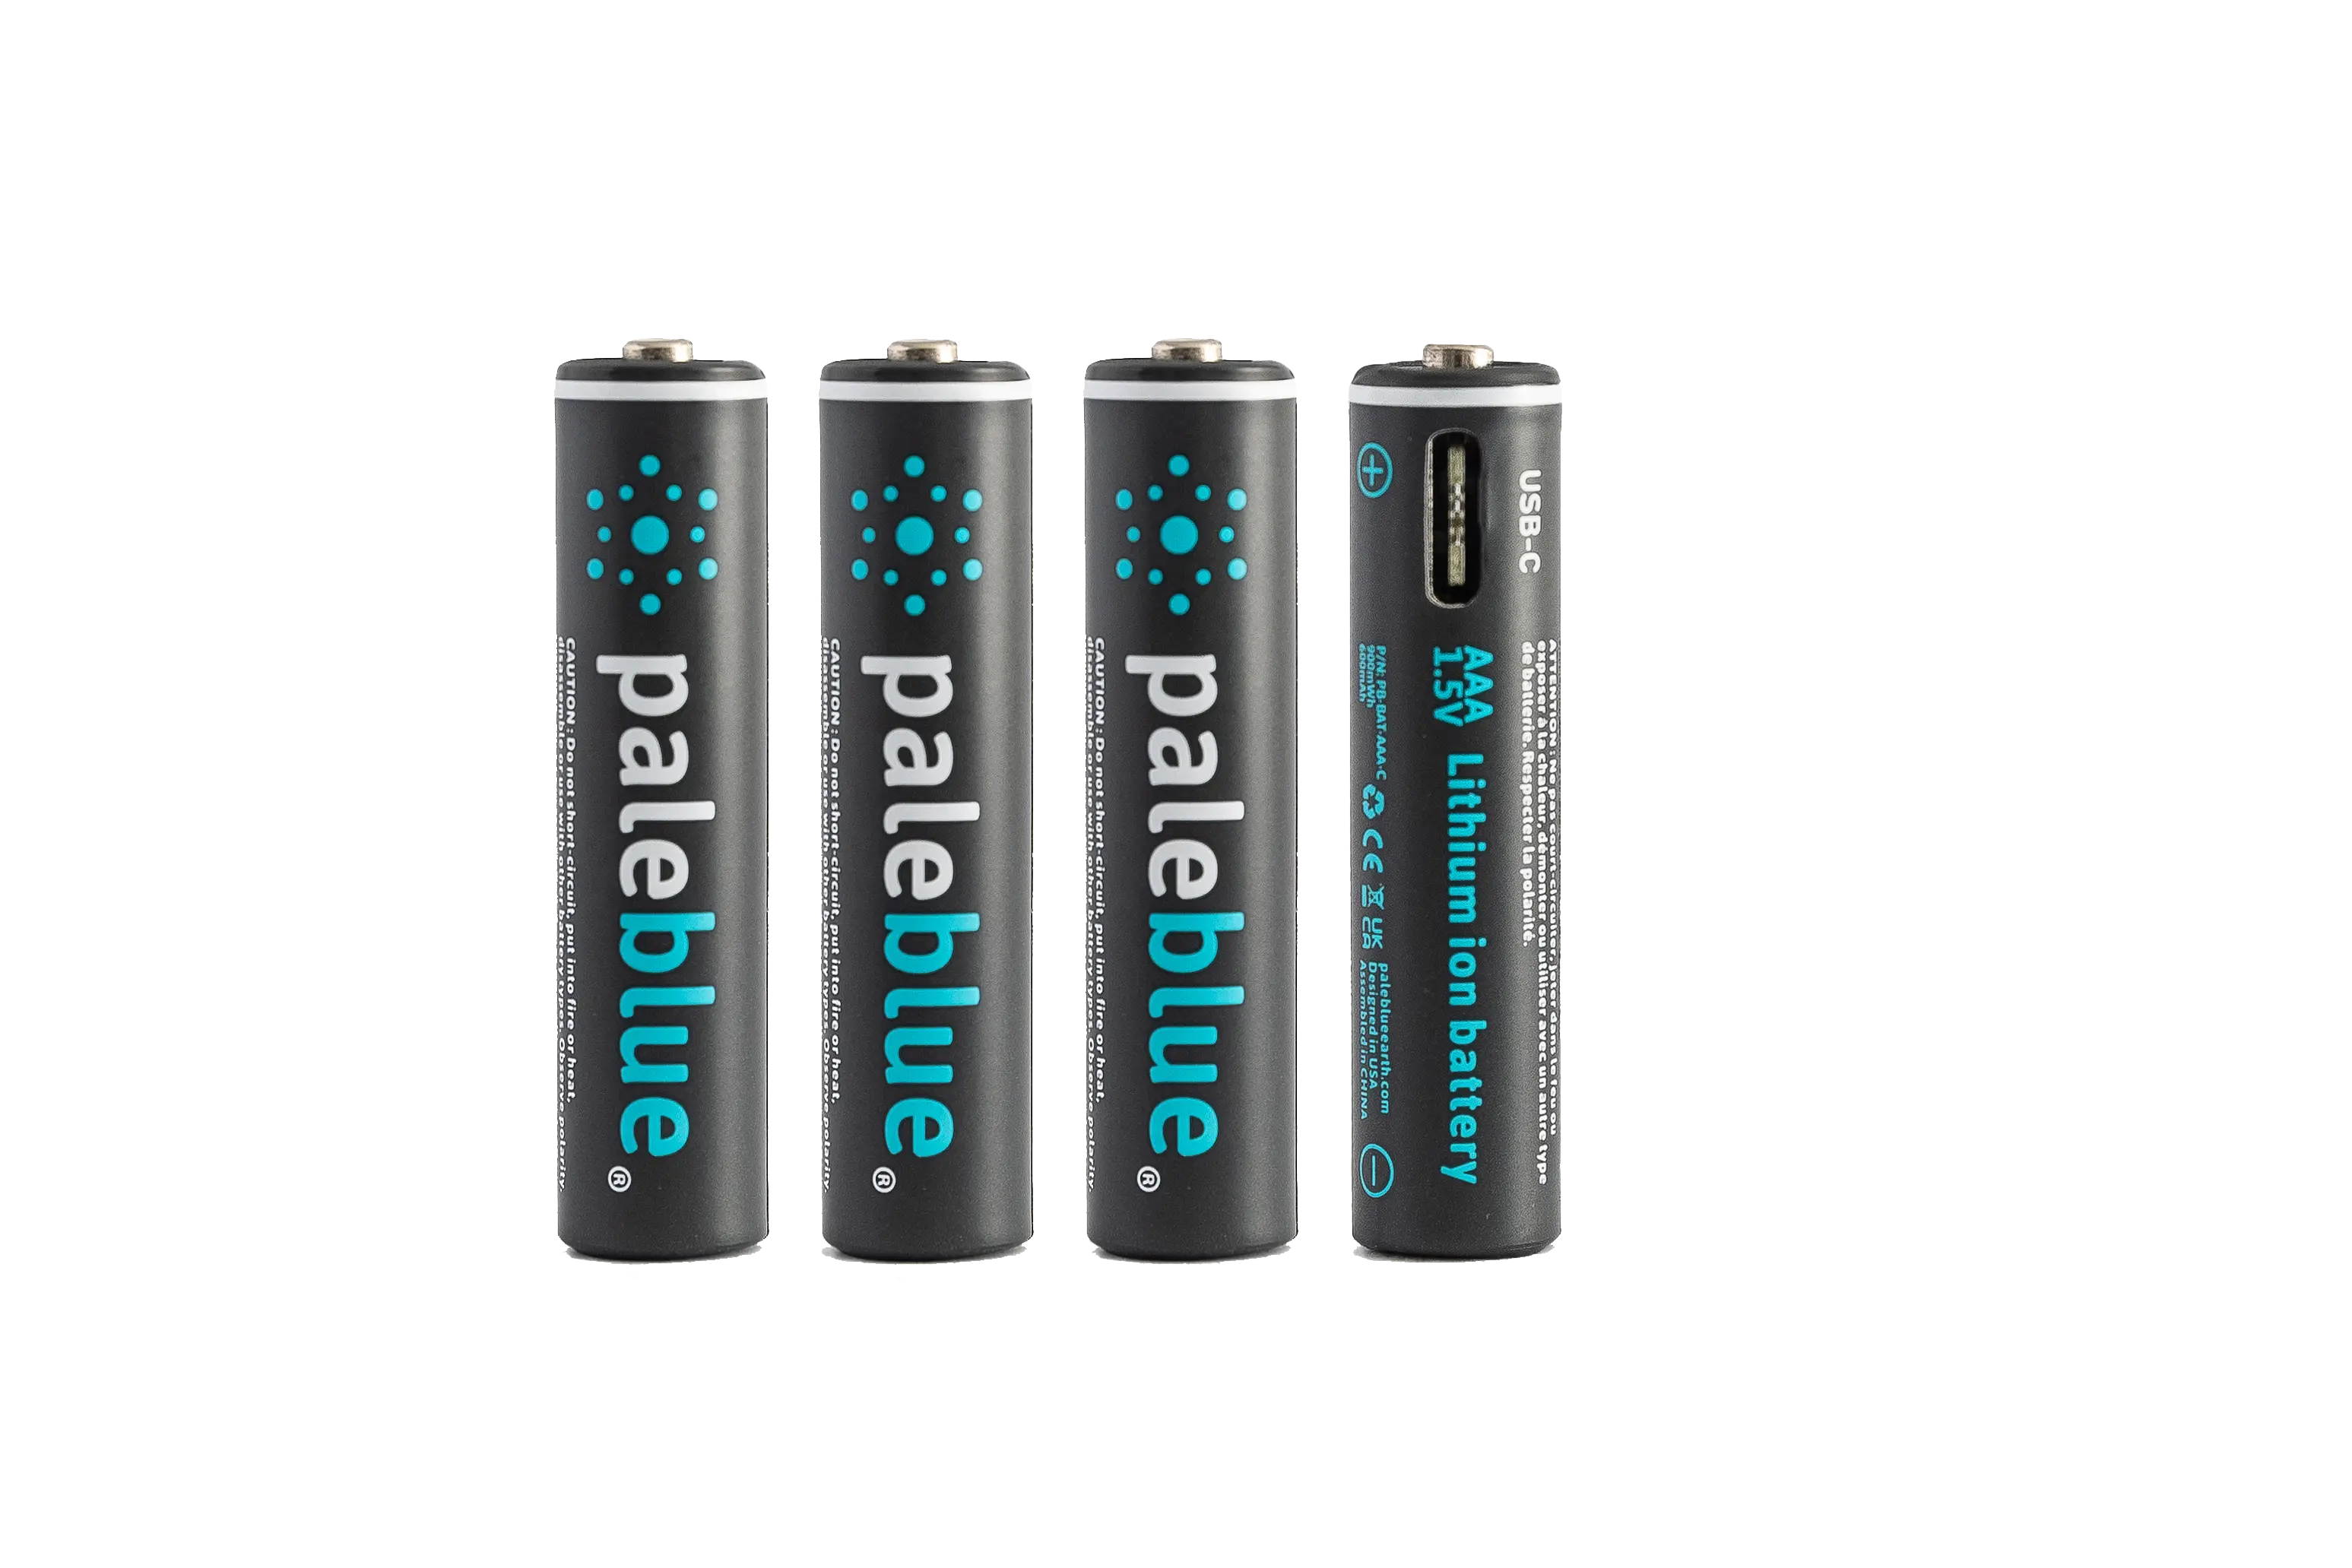 Paleblue Rechargeable USB Batteries